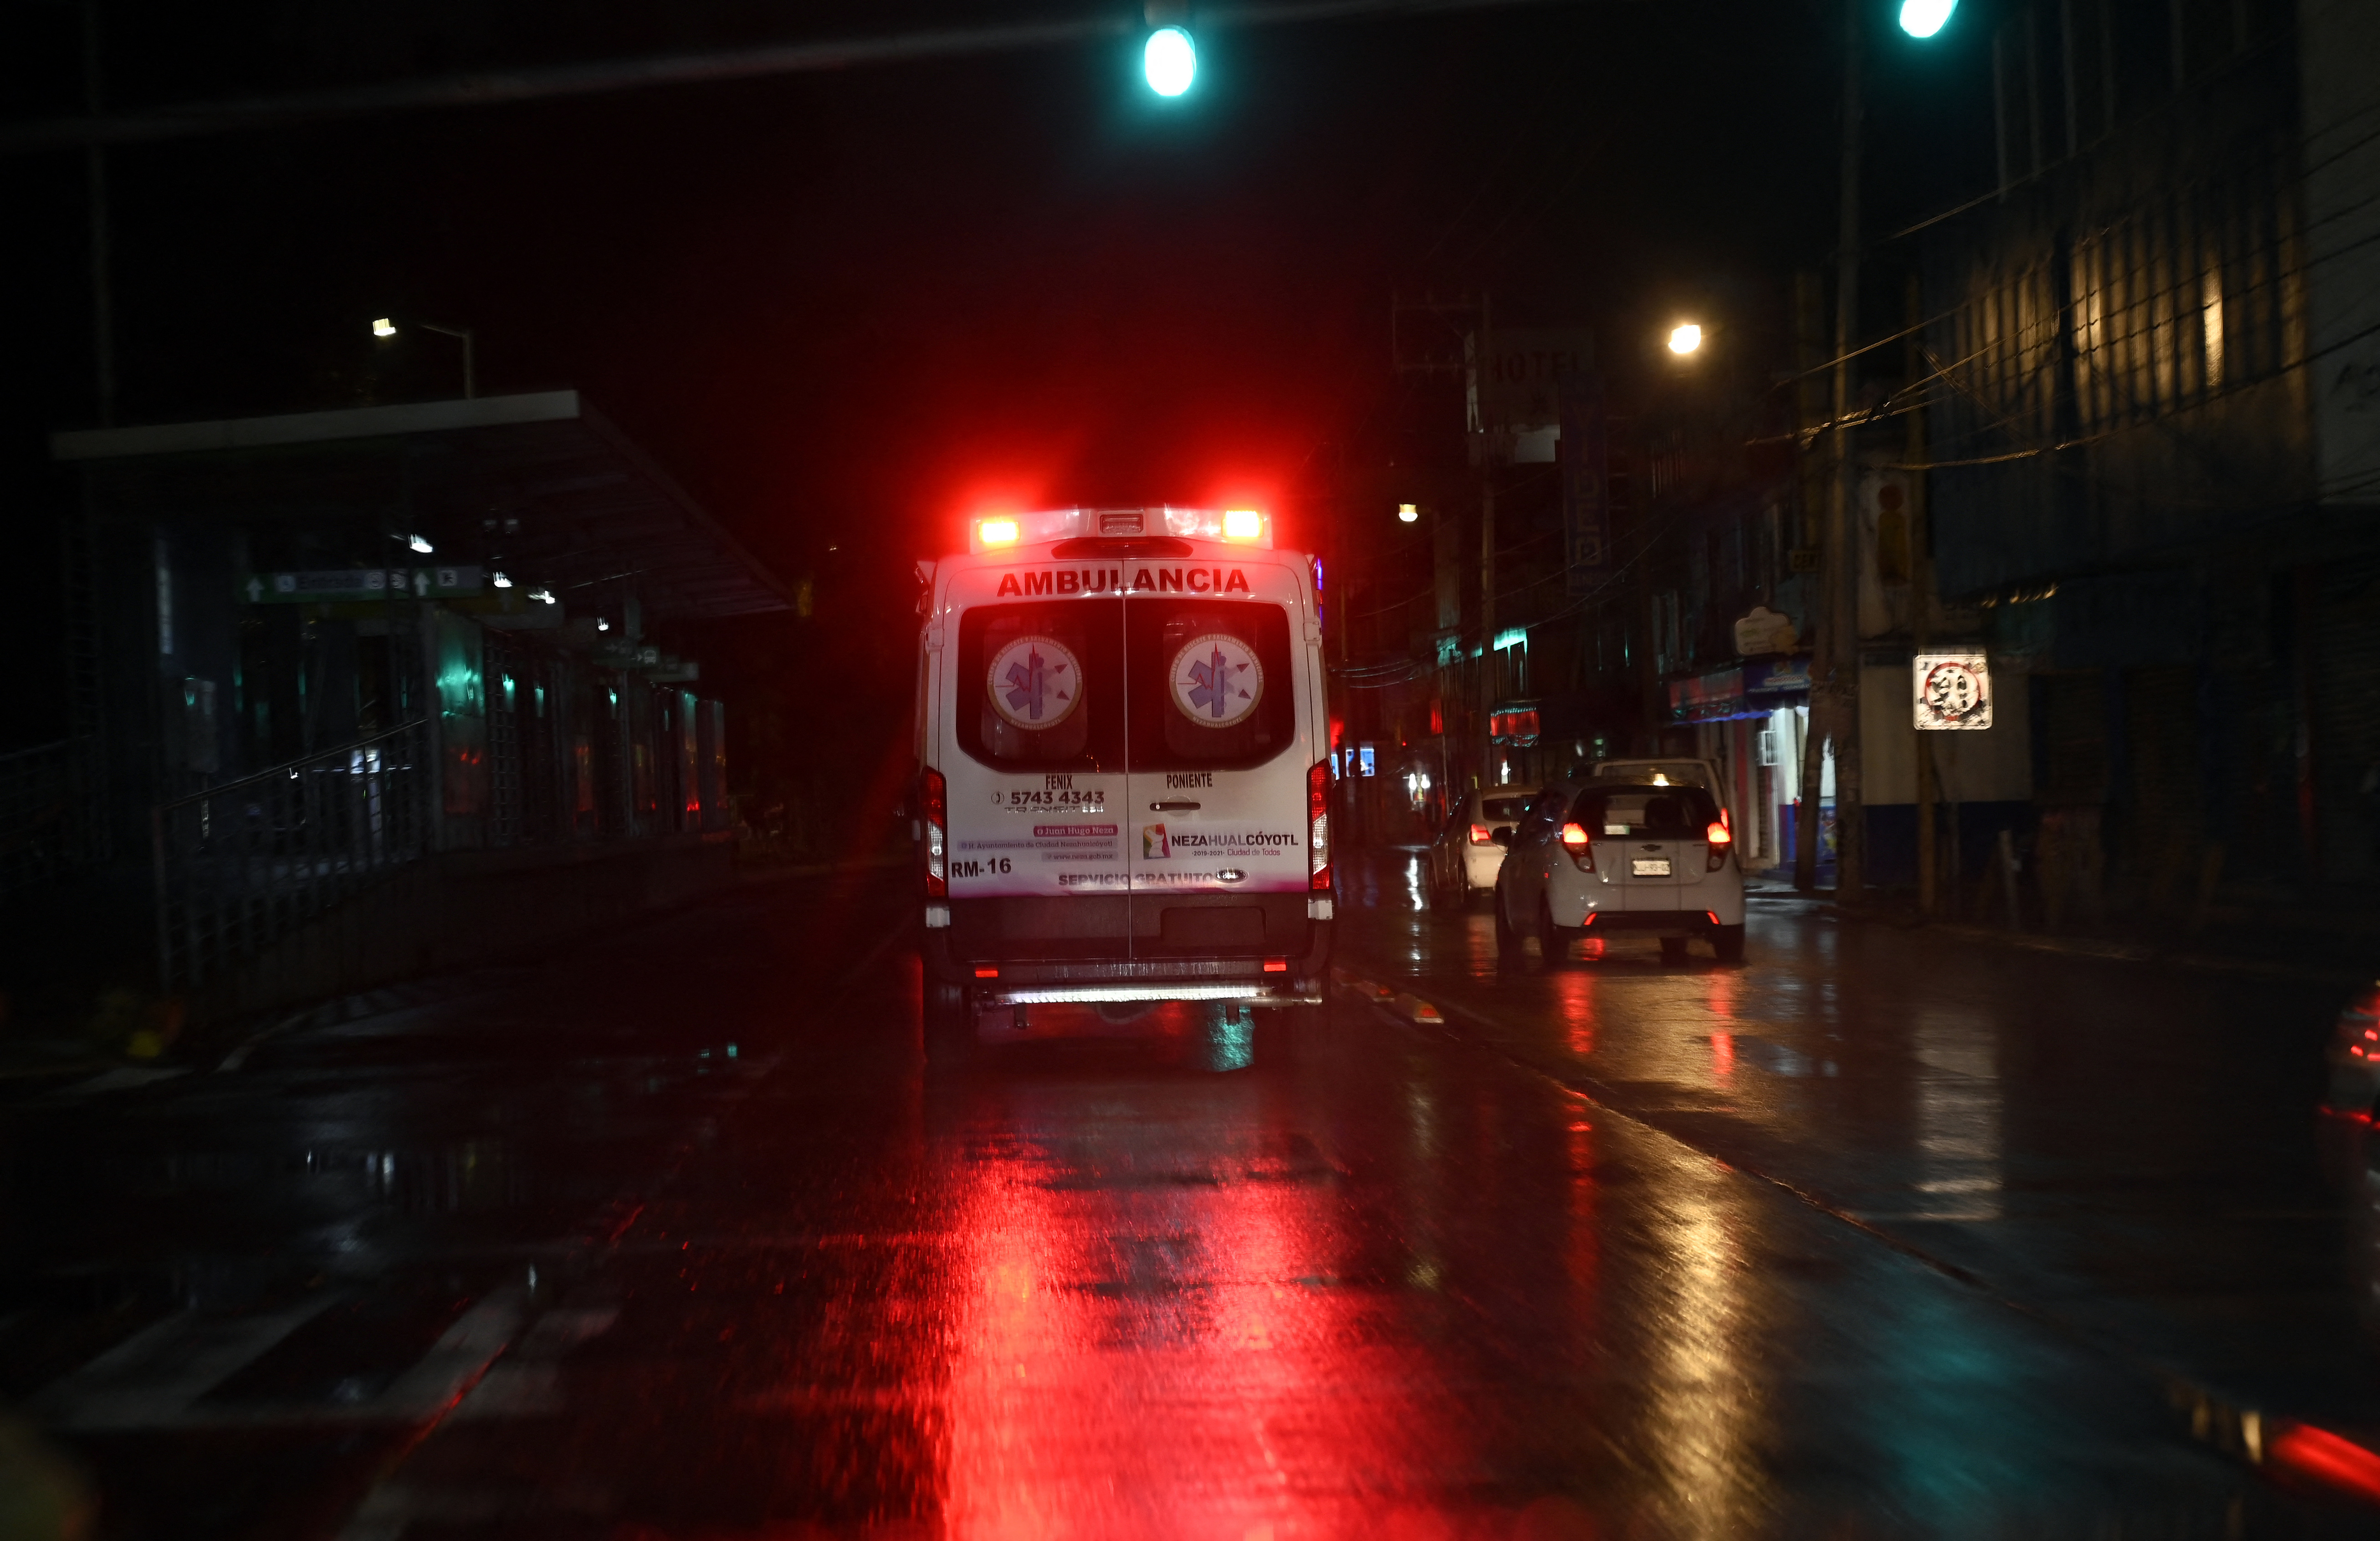 De nombreuses ambulances se sont rendues sur place pour transporter les personnes malades vers différents hôpitaux du secteur. (Illustration) AFP/ Alfredo Estrella